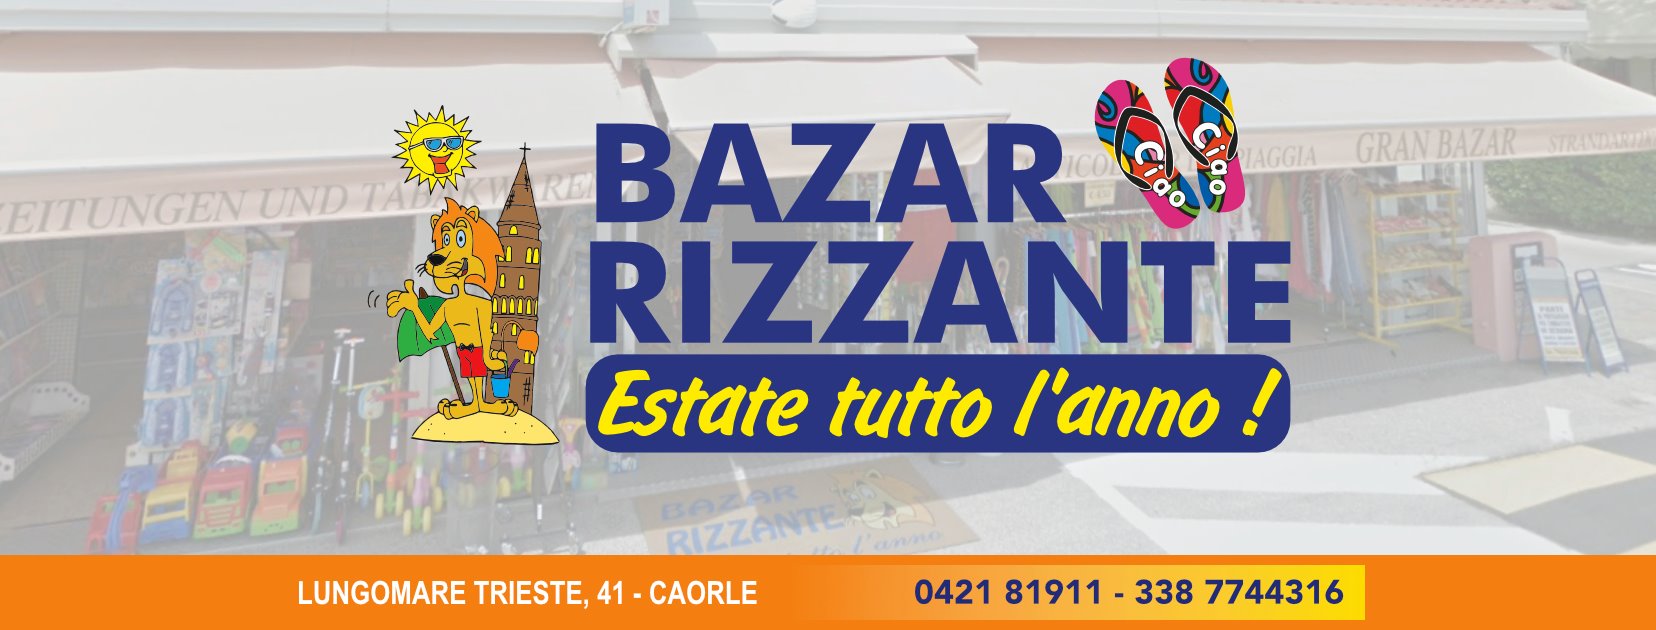 Bazar Rizzante